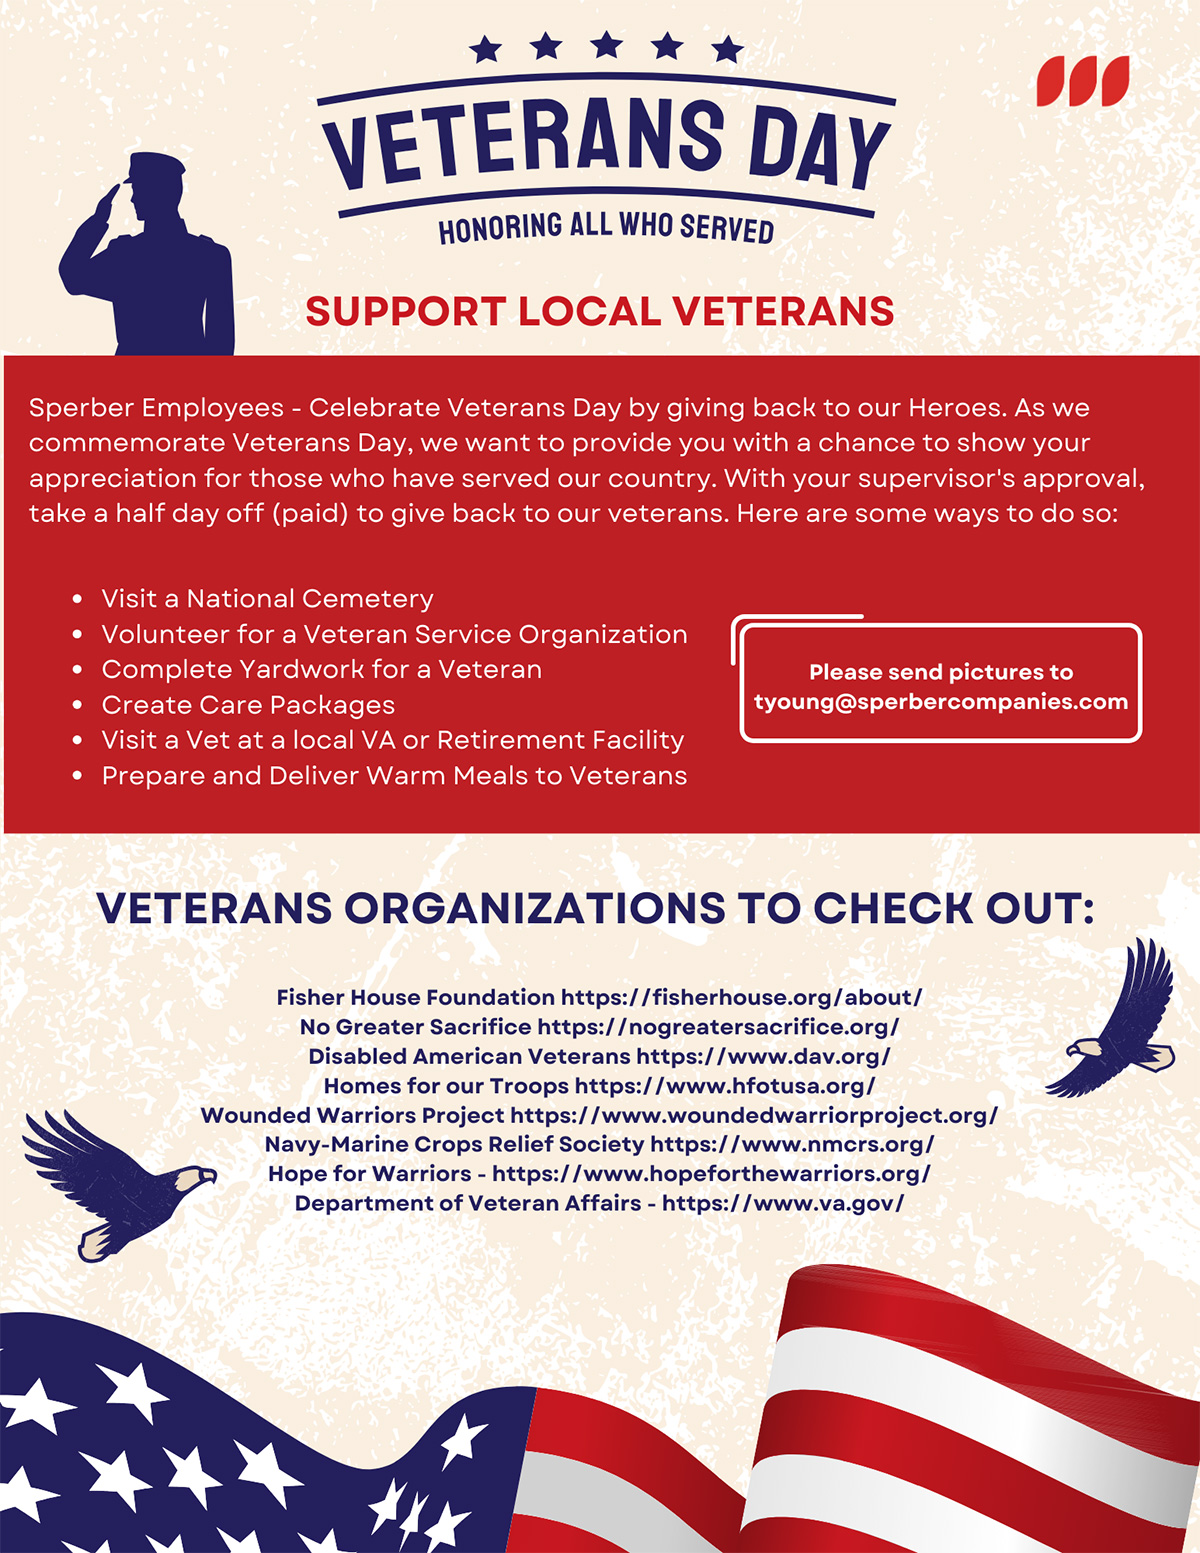 Veterans Day - Honoring All Who Served - Sperber Companies